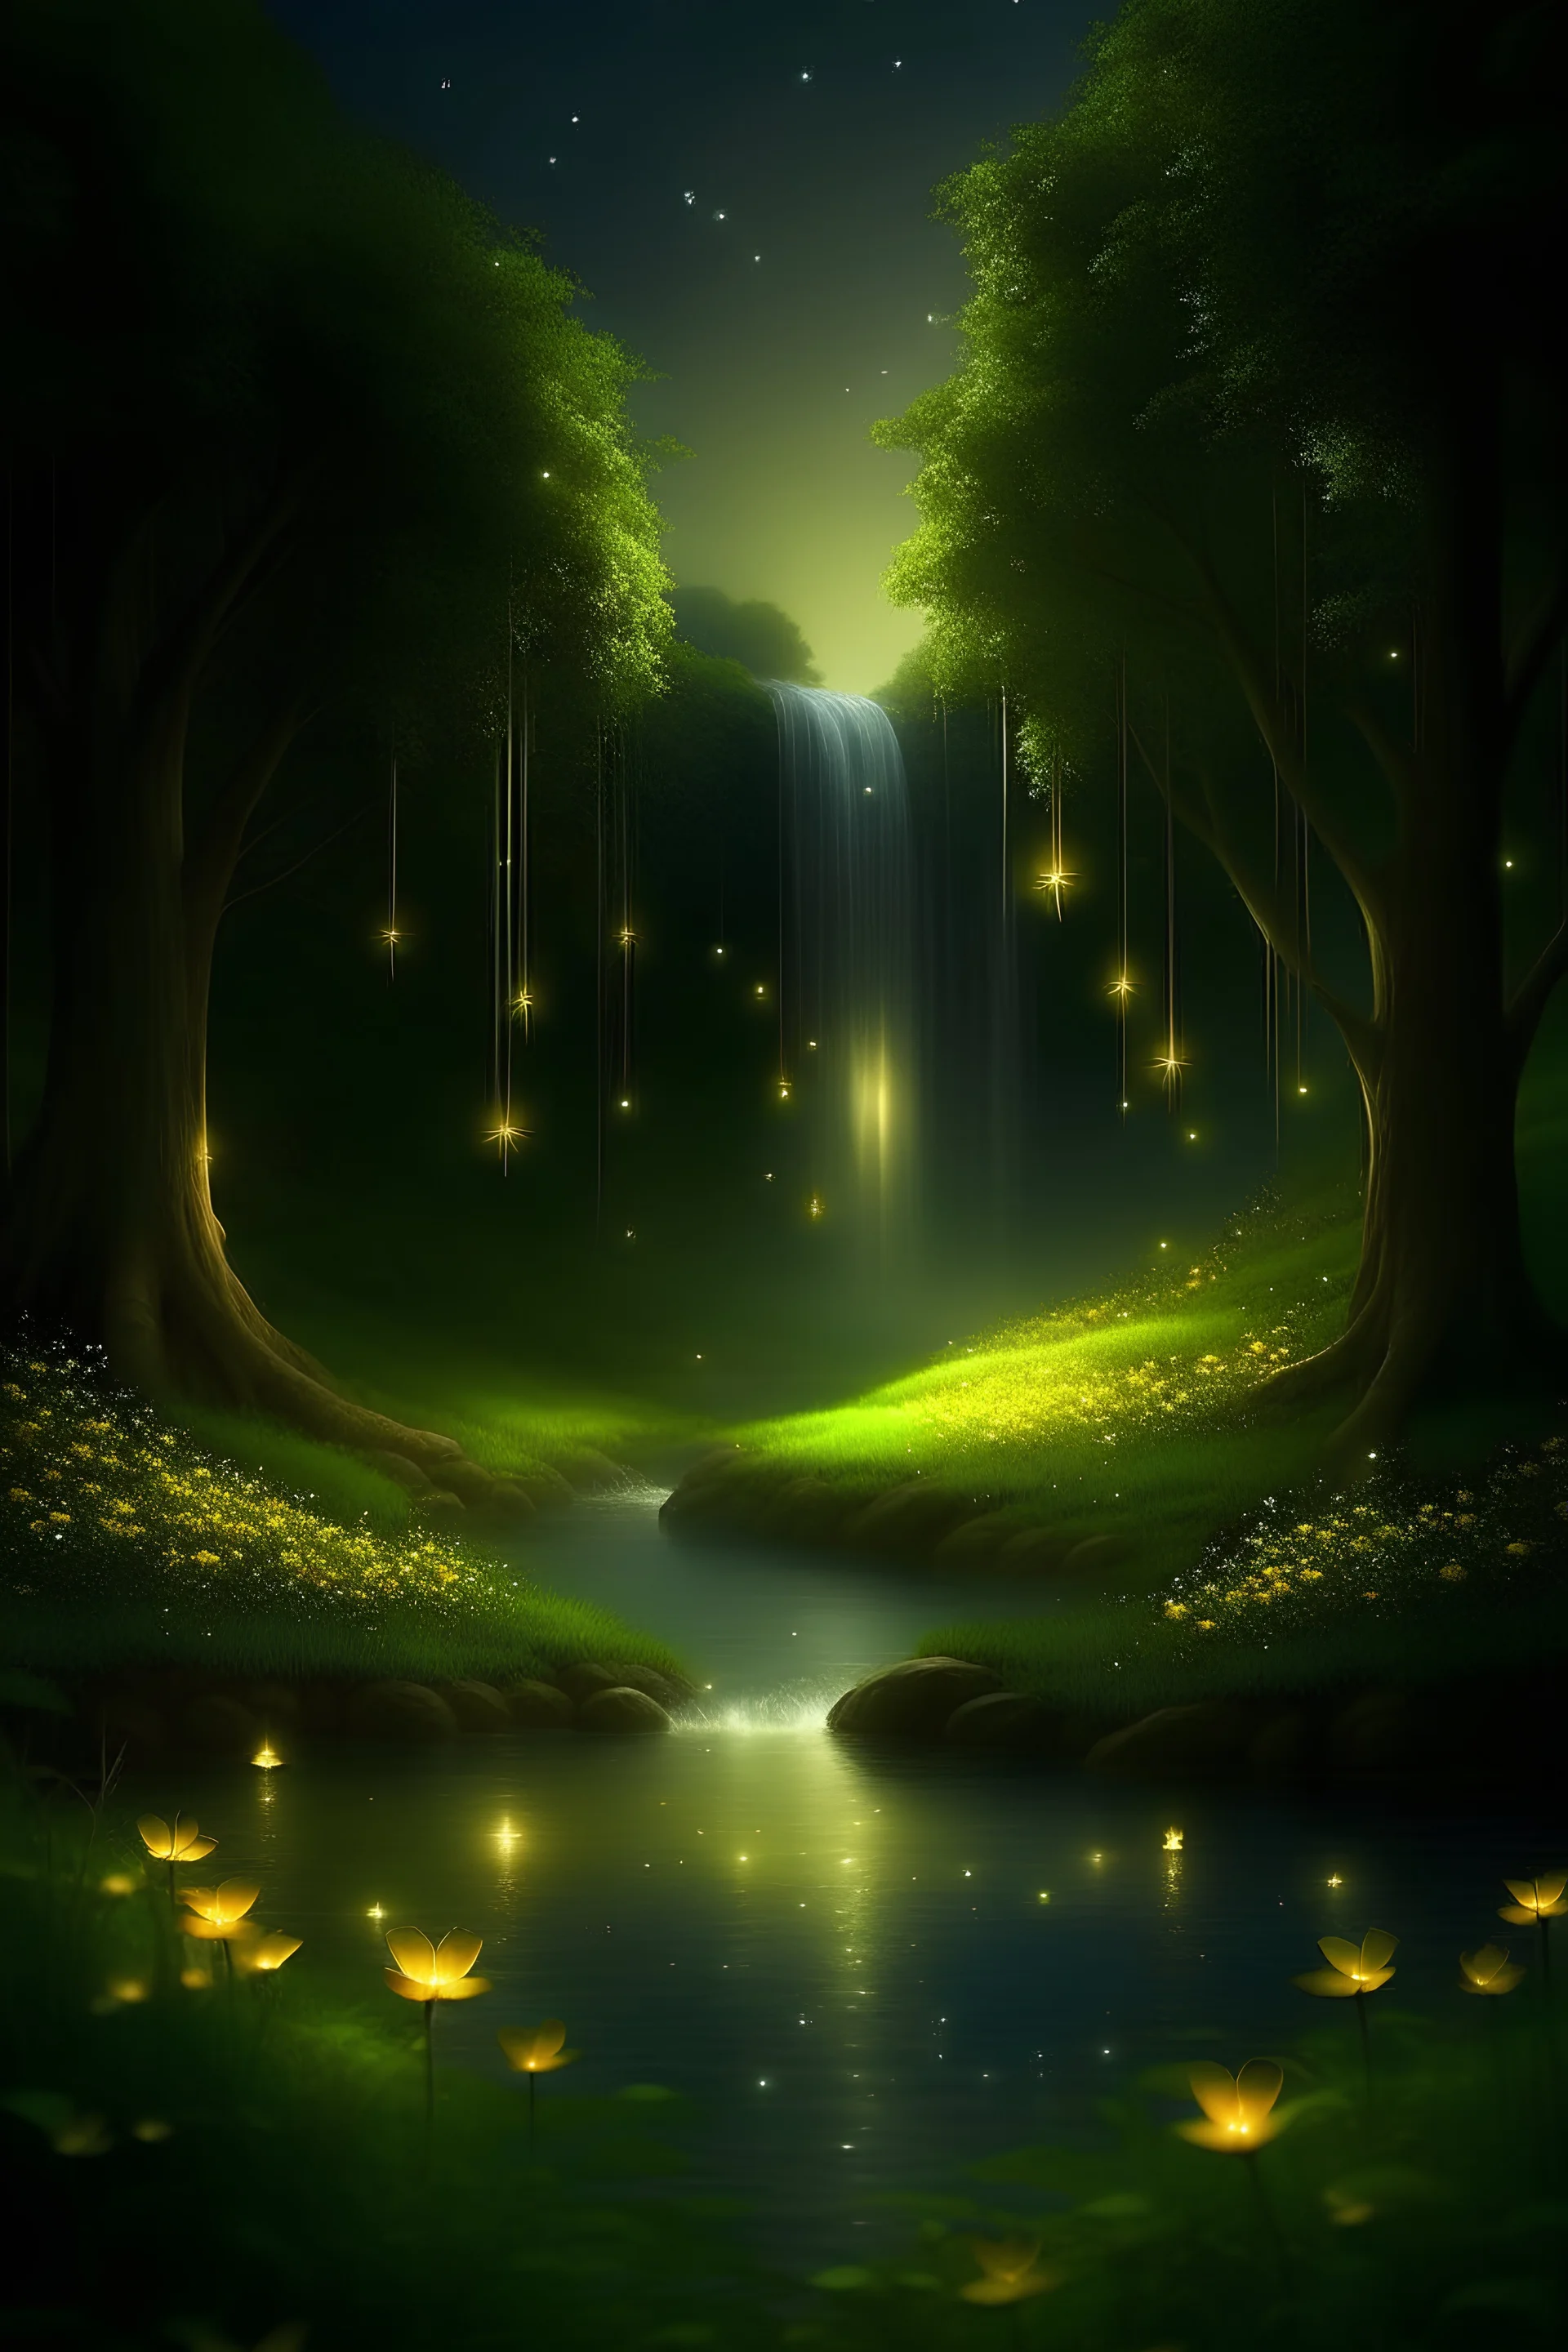 cielo estrellado de la primavera, un lago tranquilo refleja la luz de la luna. Los árboles florecen en colores suaves, mientras las luciérnagas danzan en el aire, iluminando la noche con destellos dorados. una cascada completa este cuadro mágico de serenidad nocturna.